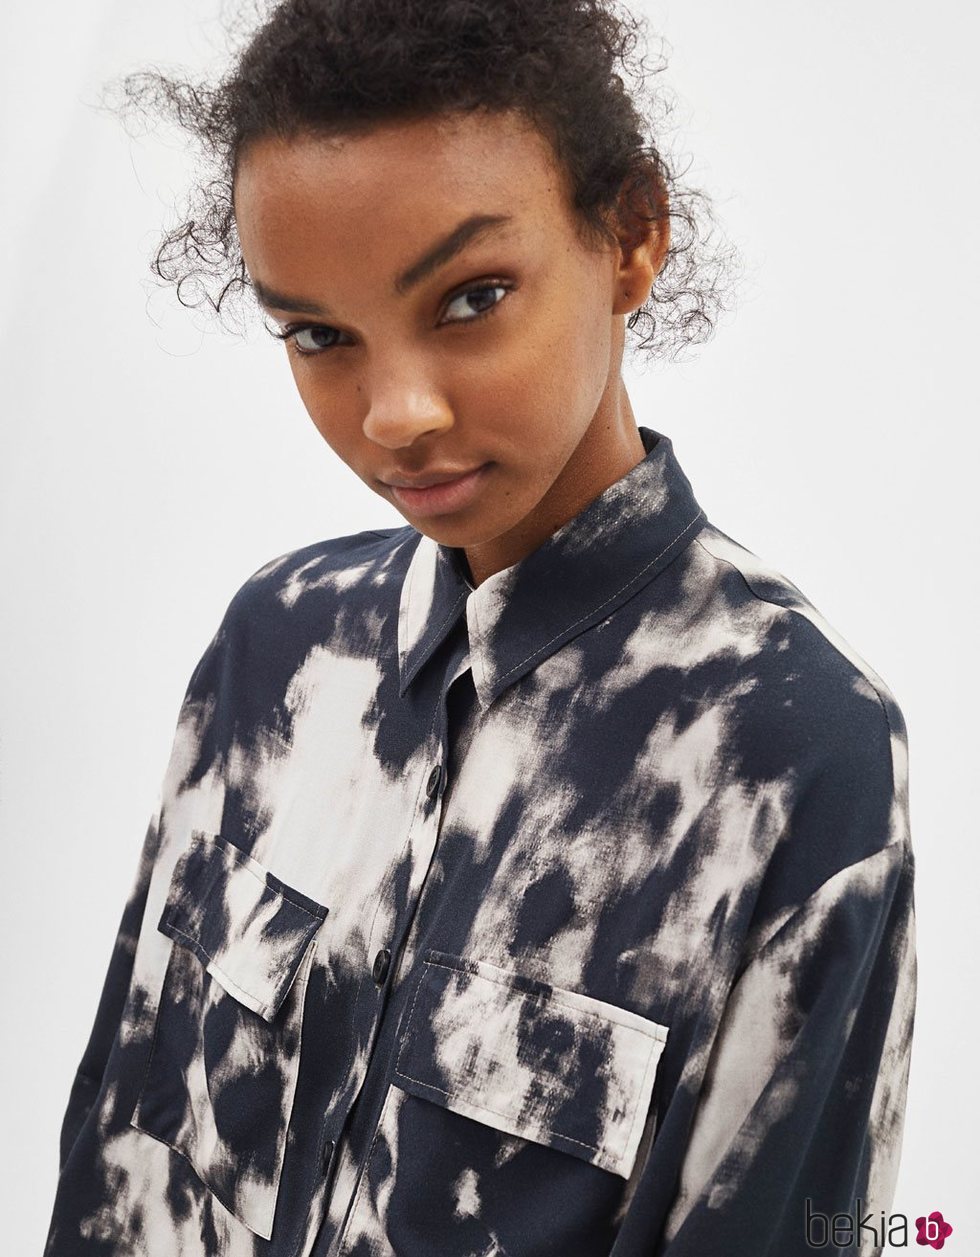 Modelo luciendo una camisa estampada en tonos oscuros de la colección de primavera 2019 de Bershka